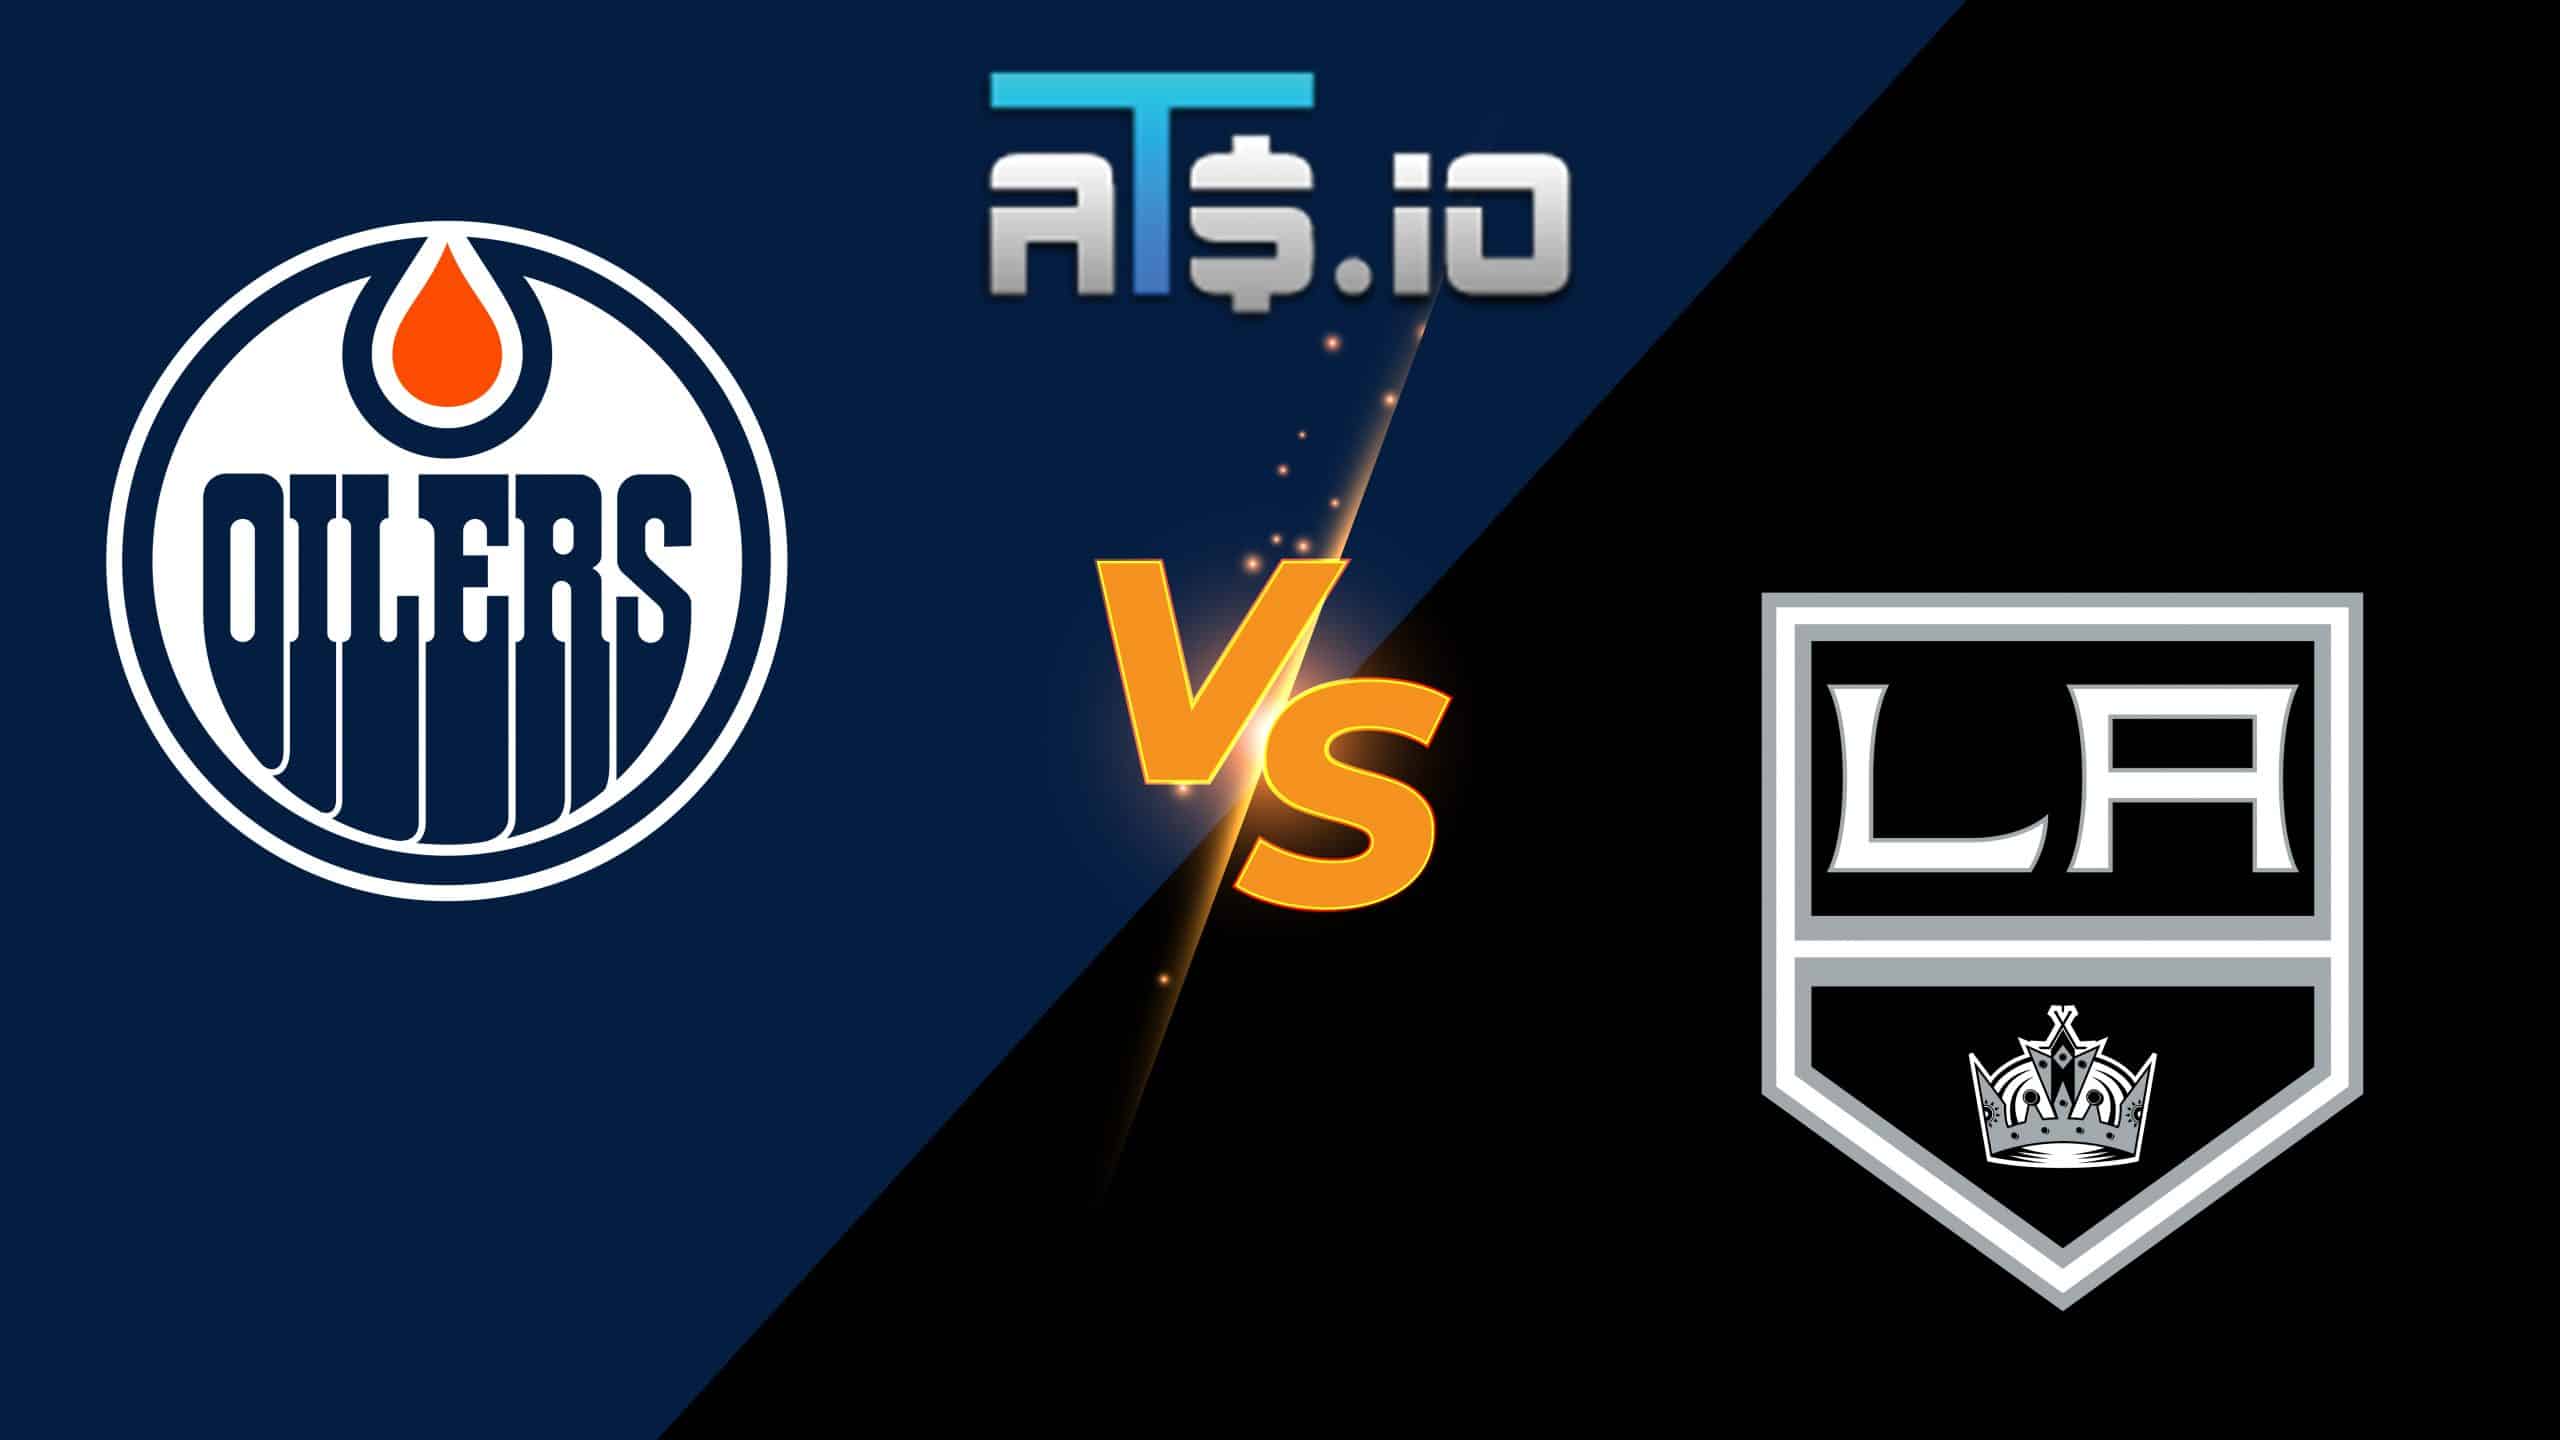 Edmonton Oilers vs Los Angeles Kings Game 6 Pick & Prediction 05/12/22